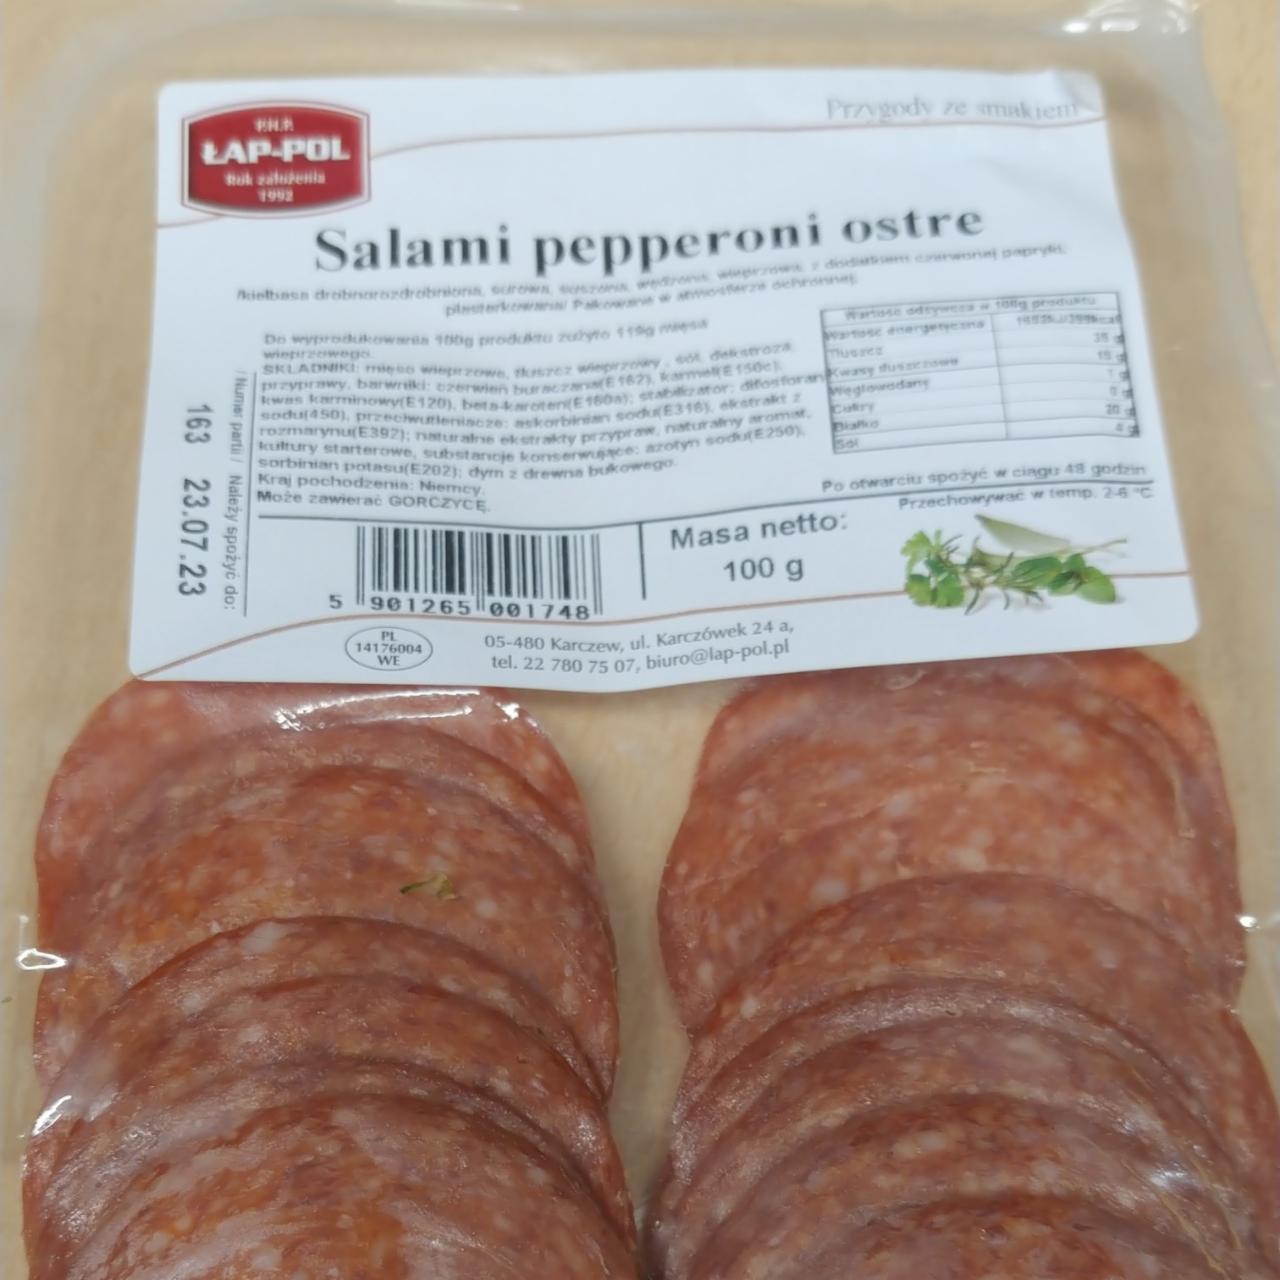 Zdjęcia - Salami pepperoni ostre Łap-pol